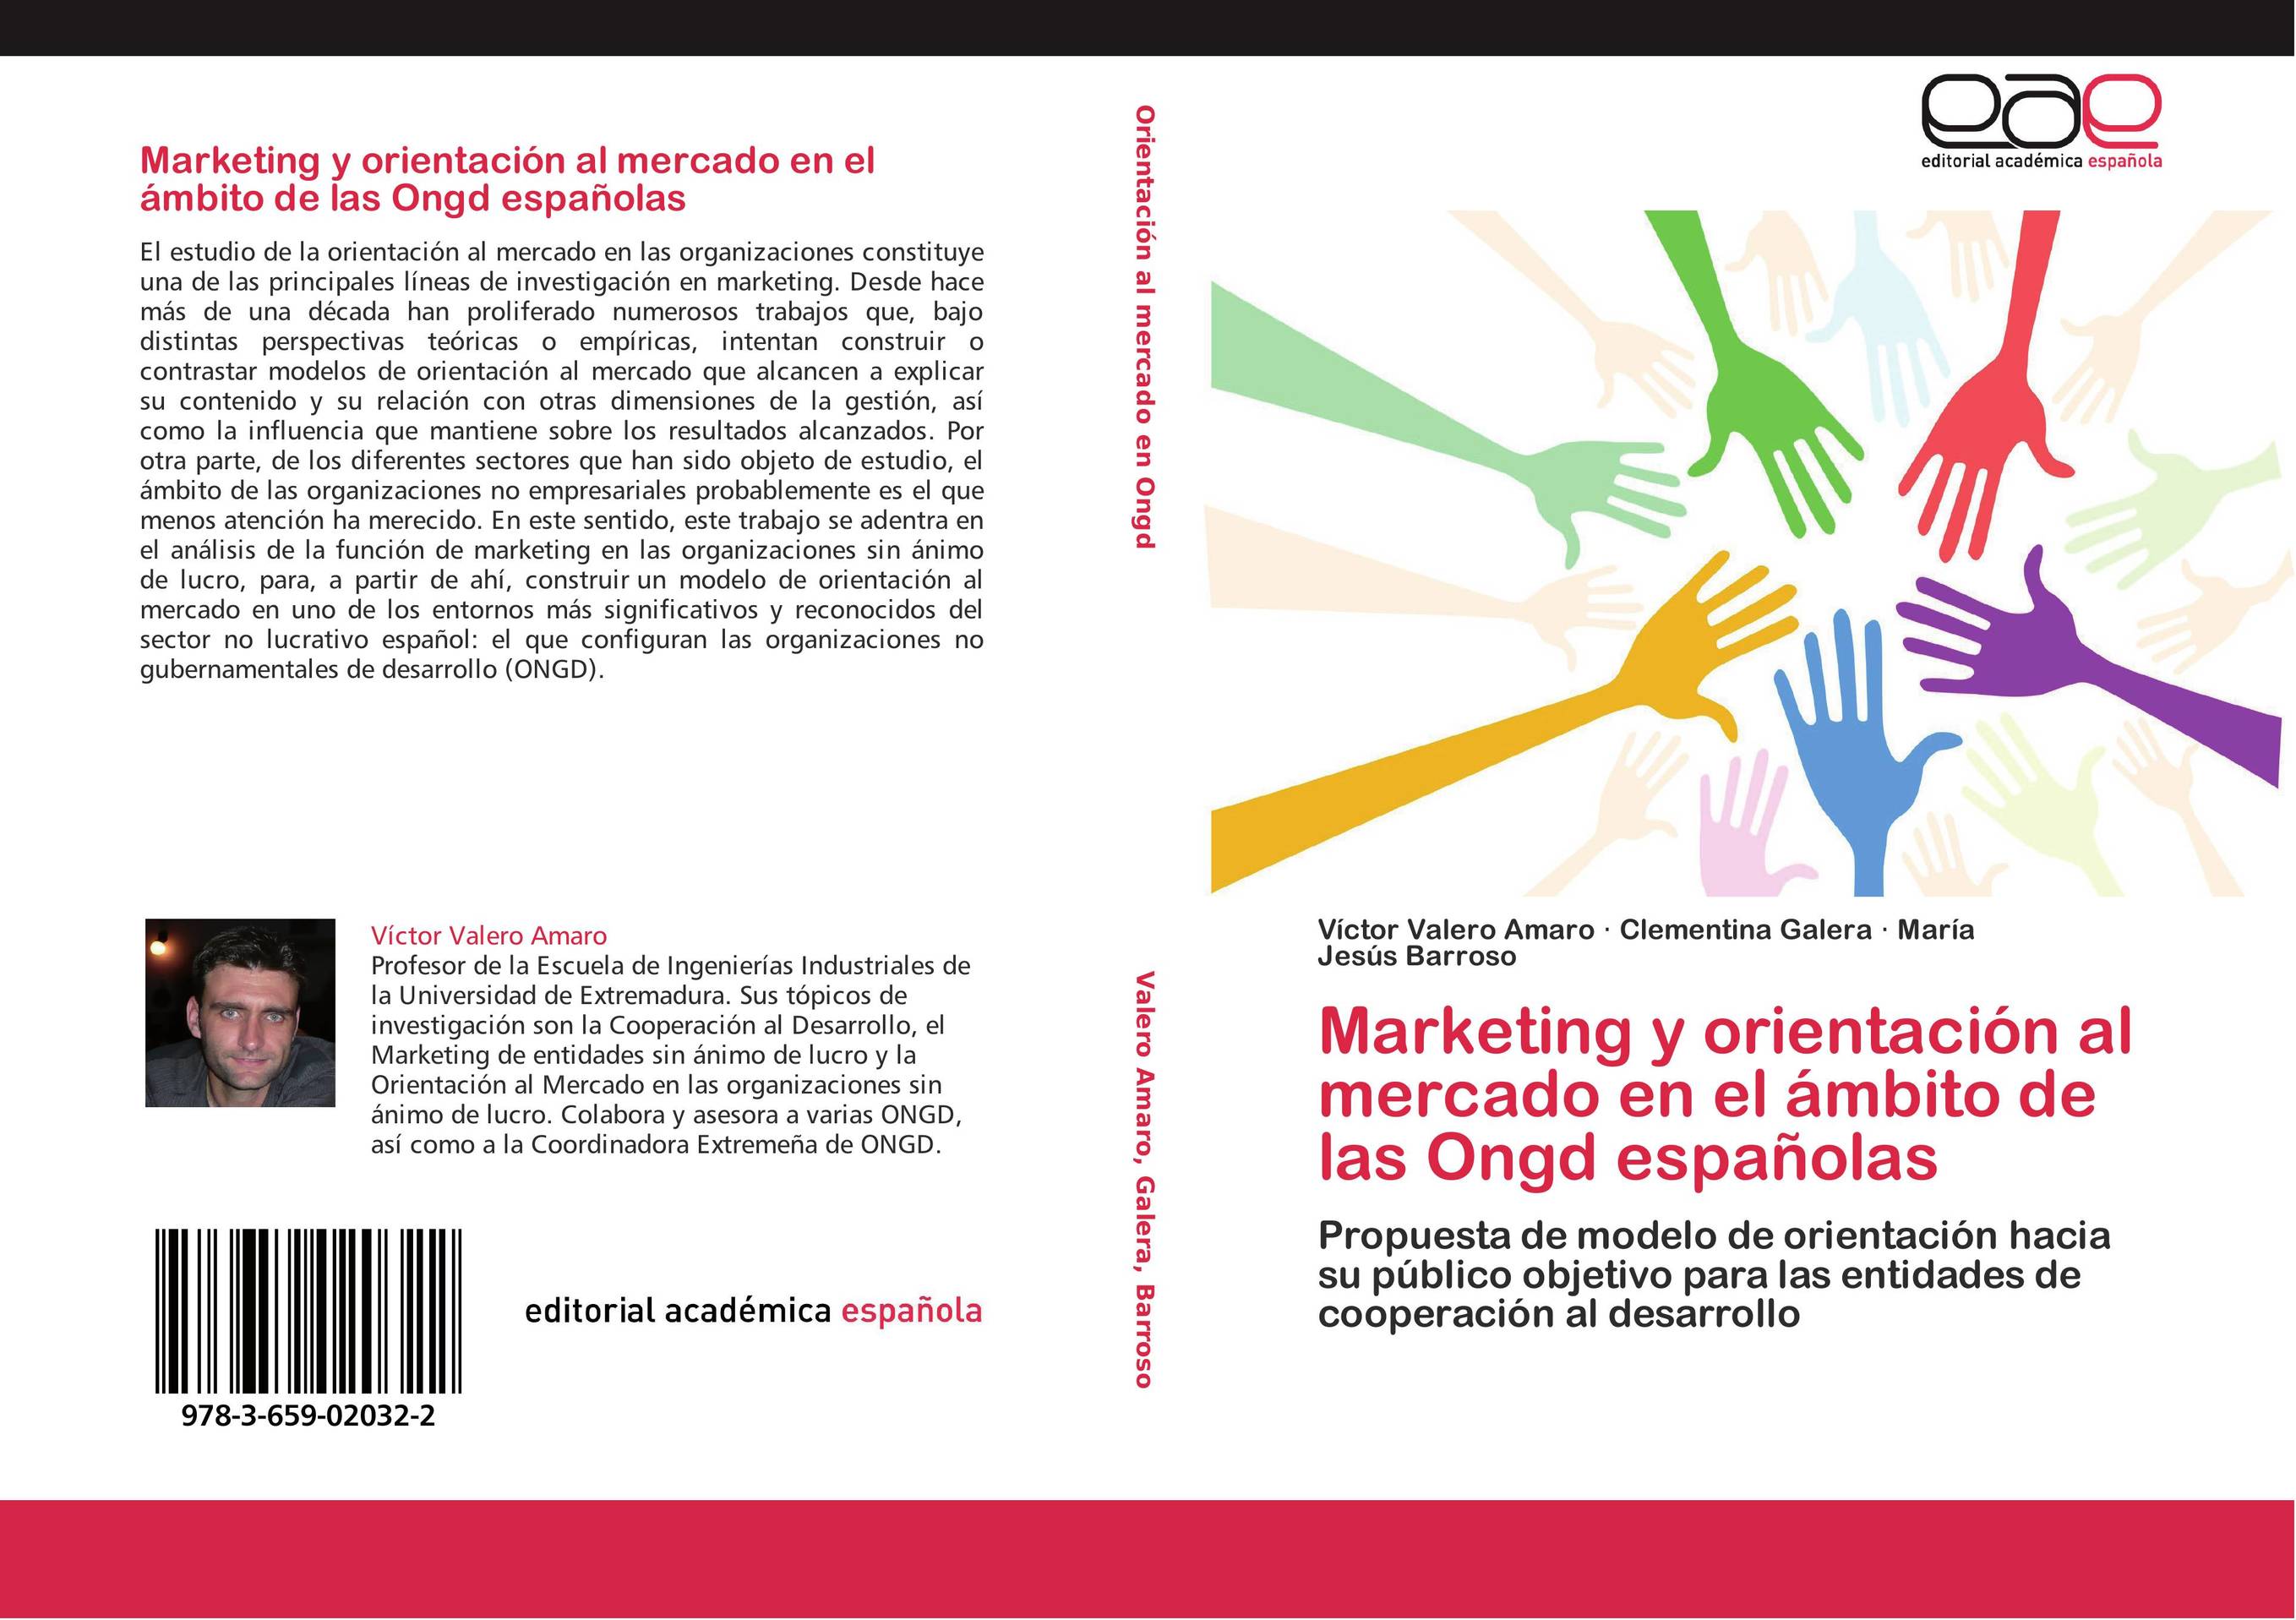 Marketing y orientación al mercado en el ámbito de las Ongd españolas